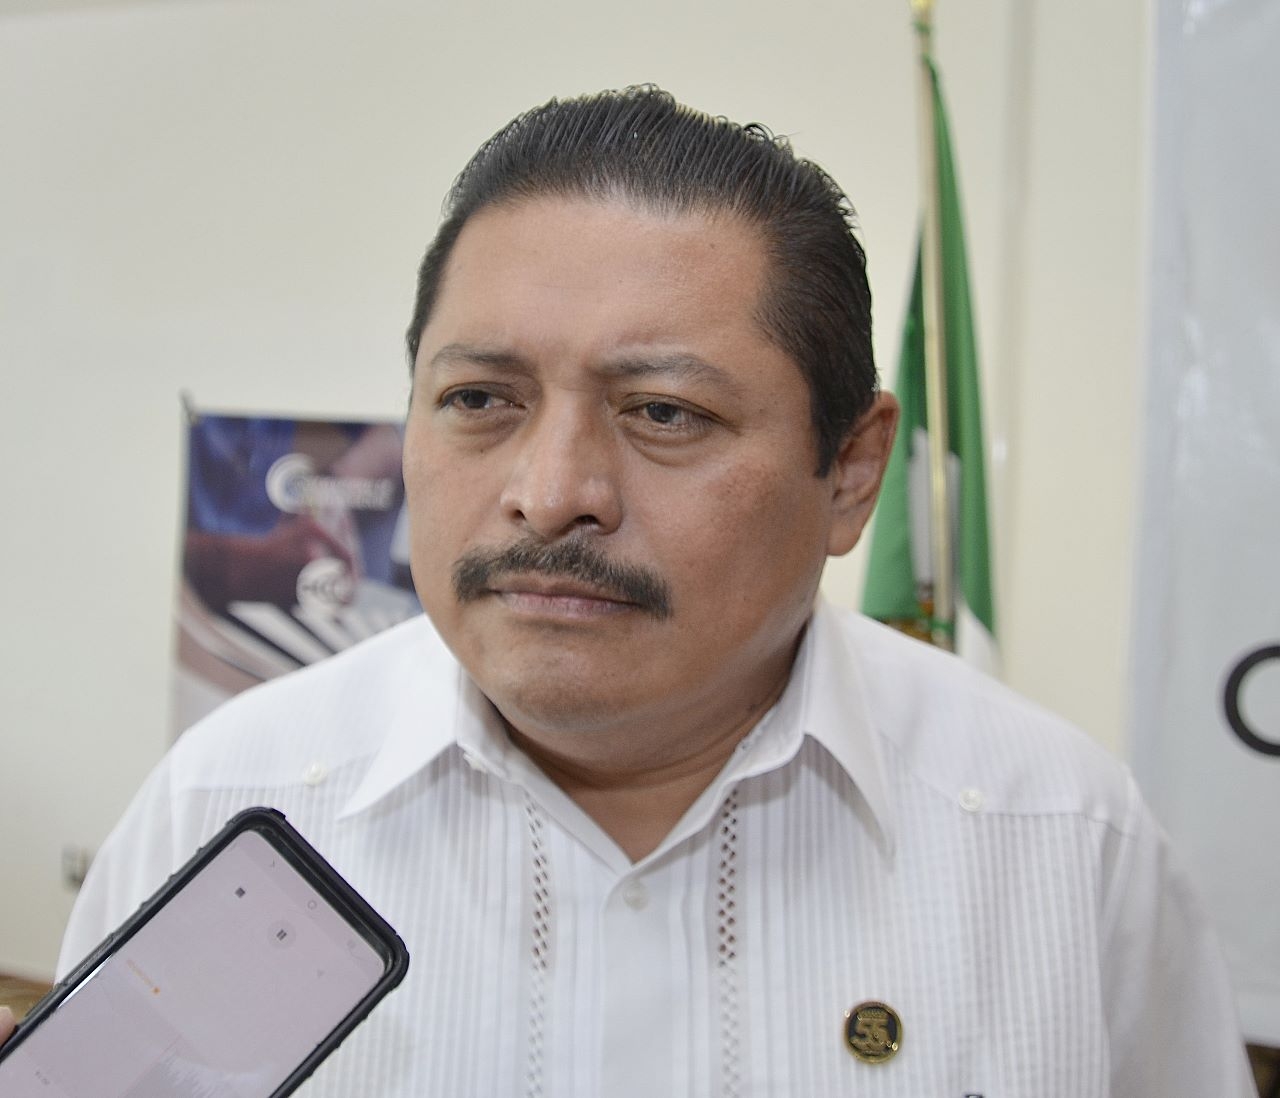 José Antonio Ruz Hernández es acusado por presuntos actos de corrupción en la UNACAR